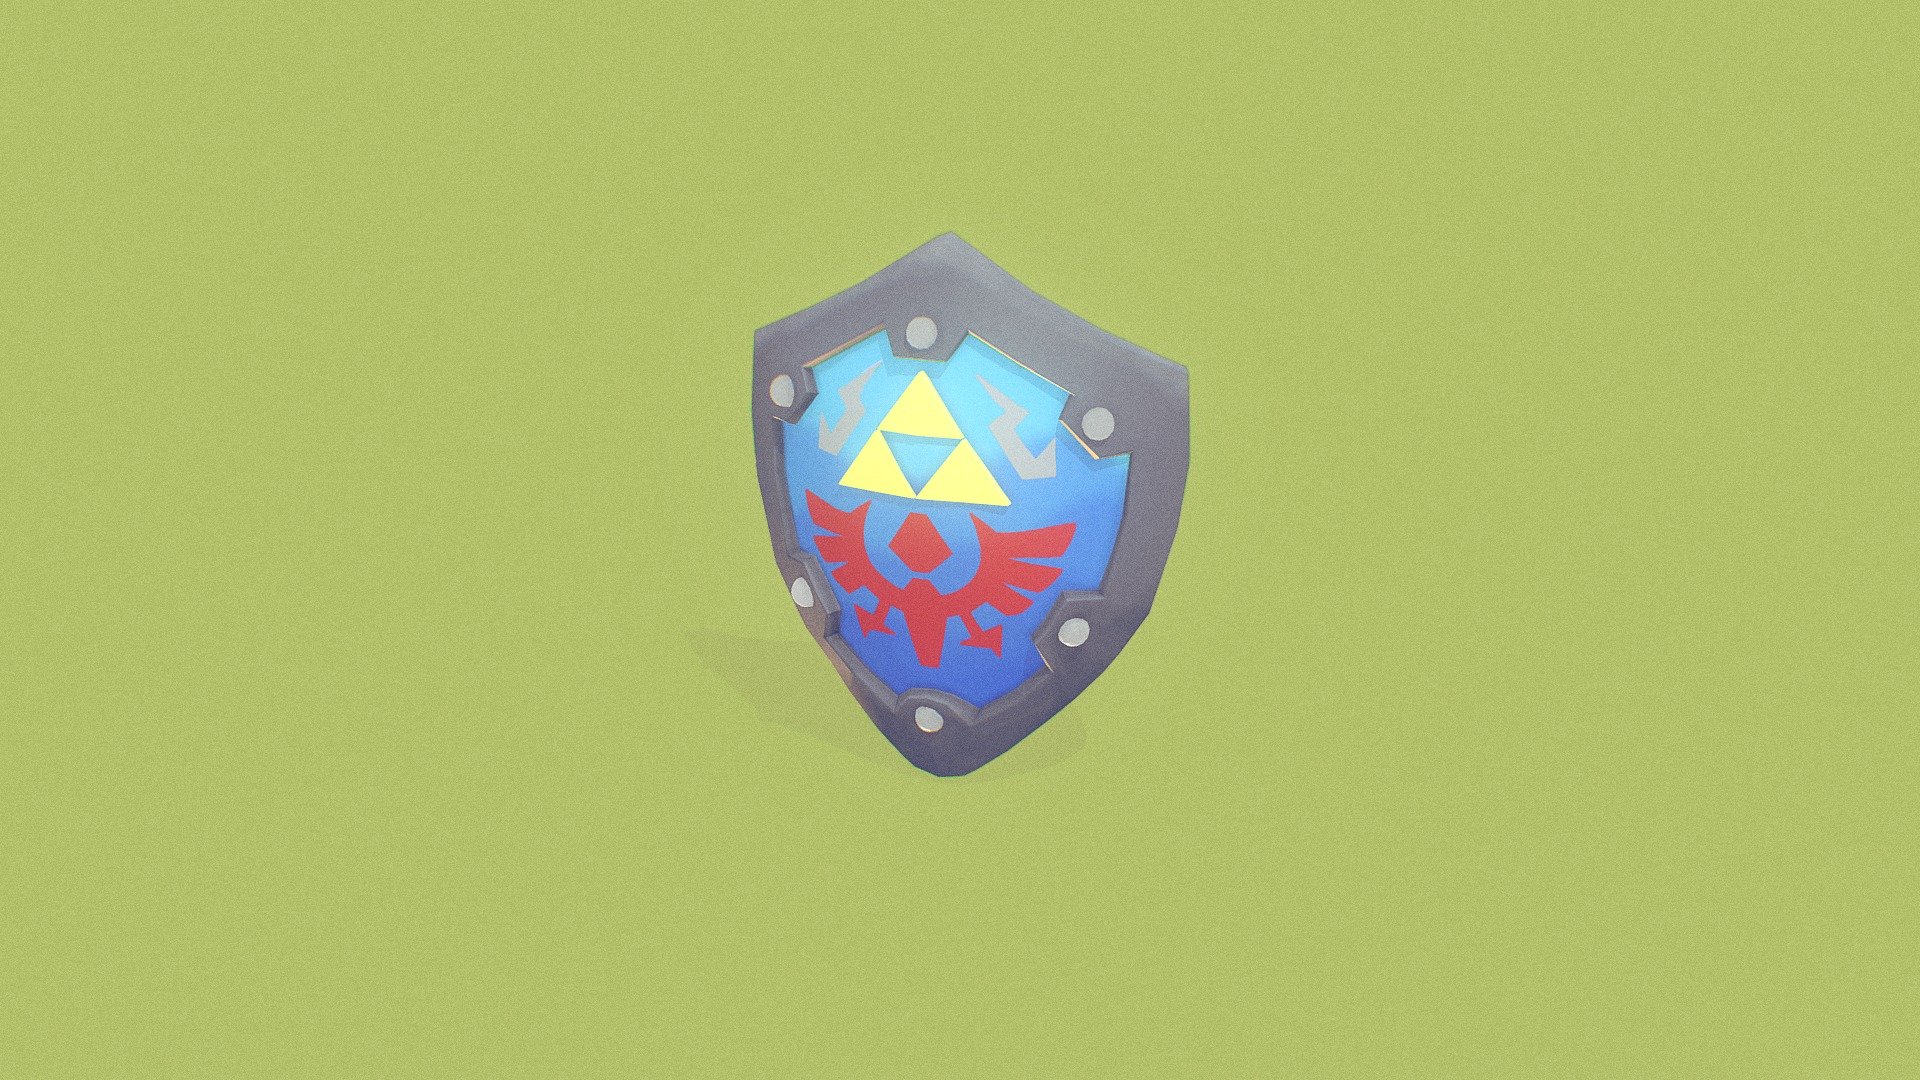 Week #3  A model of the Hylian Shield from Legend of Zelda Link's Awakening, hope you like! 

Follow me on Twitter @romanm7 - Link's Awakening - Hylian Shield - 3D model by Bayo (@romanmarin) 3d model